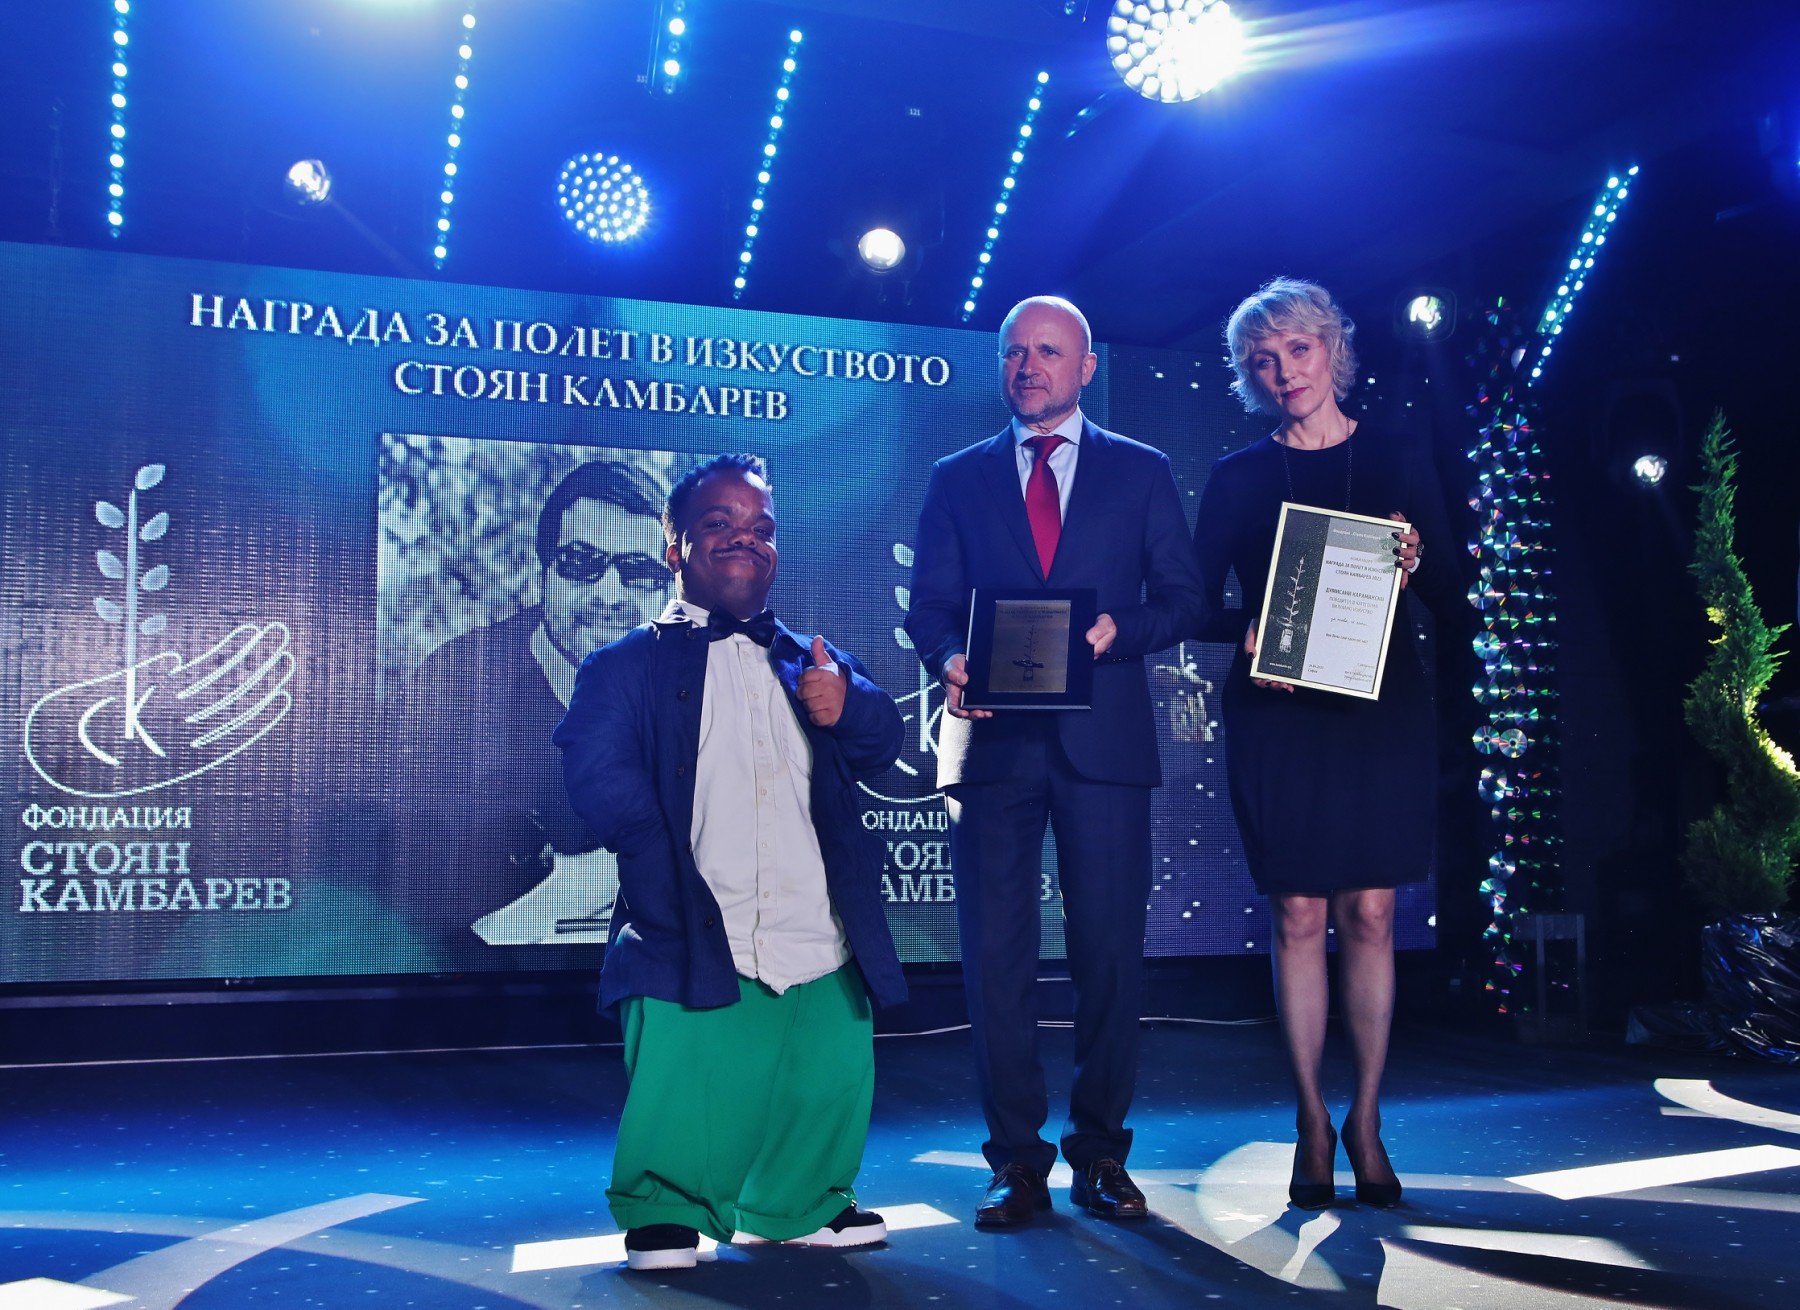 Победителят в категория "Визуално изкуство" Думисани Карамански получи специални призове от Емил Кайкамджозов - изпълнителен директор на лидера в морския транспорт "Бон Марин" и актрисата Койна Русева